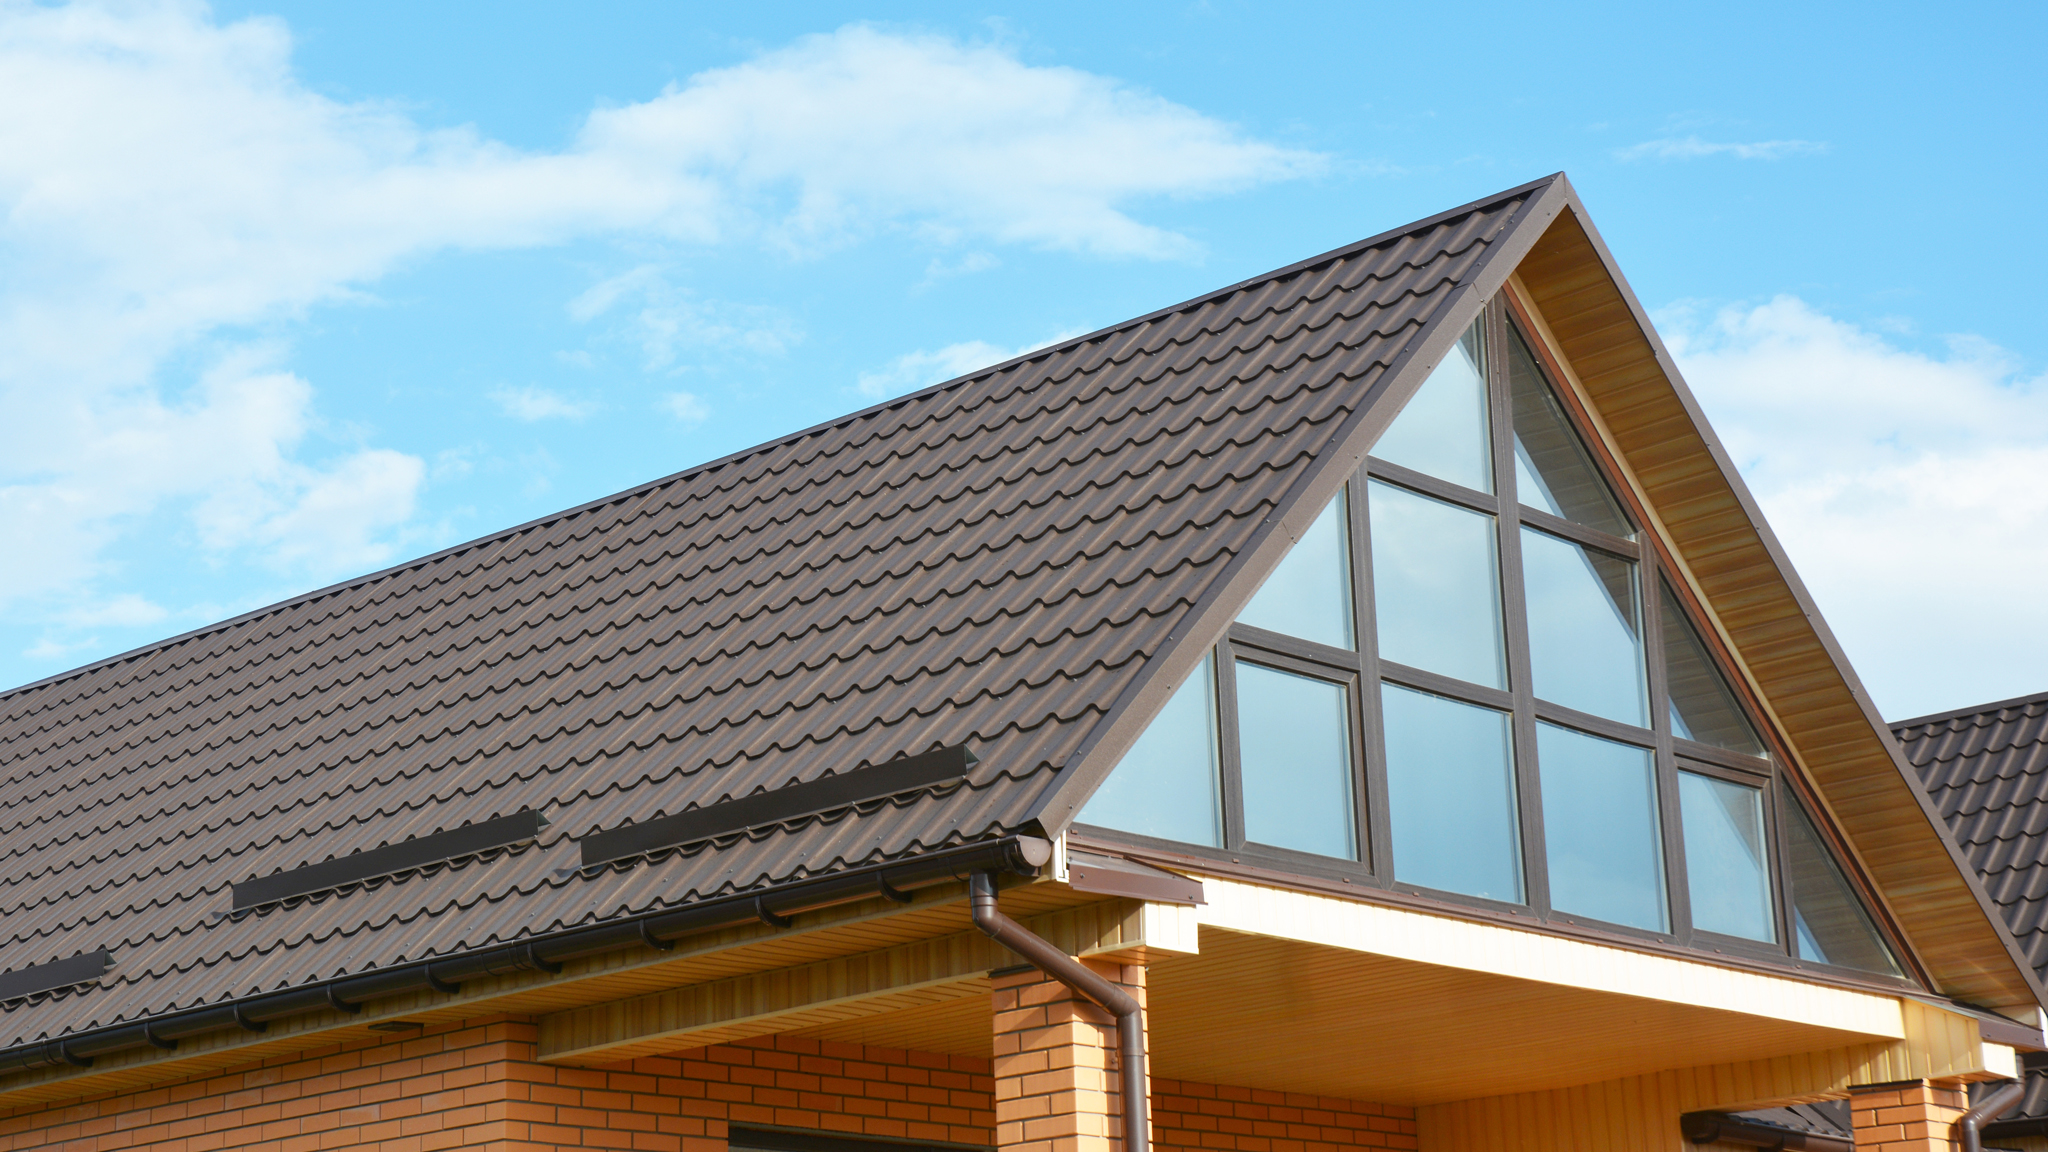 toit en pente avec panneaux de toiture de métal estampé brun imitant des tuiles de terre cuite